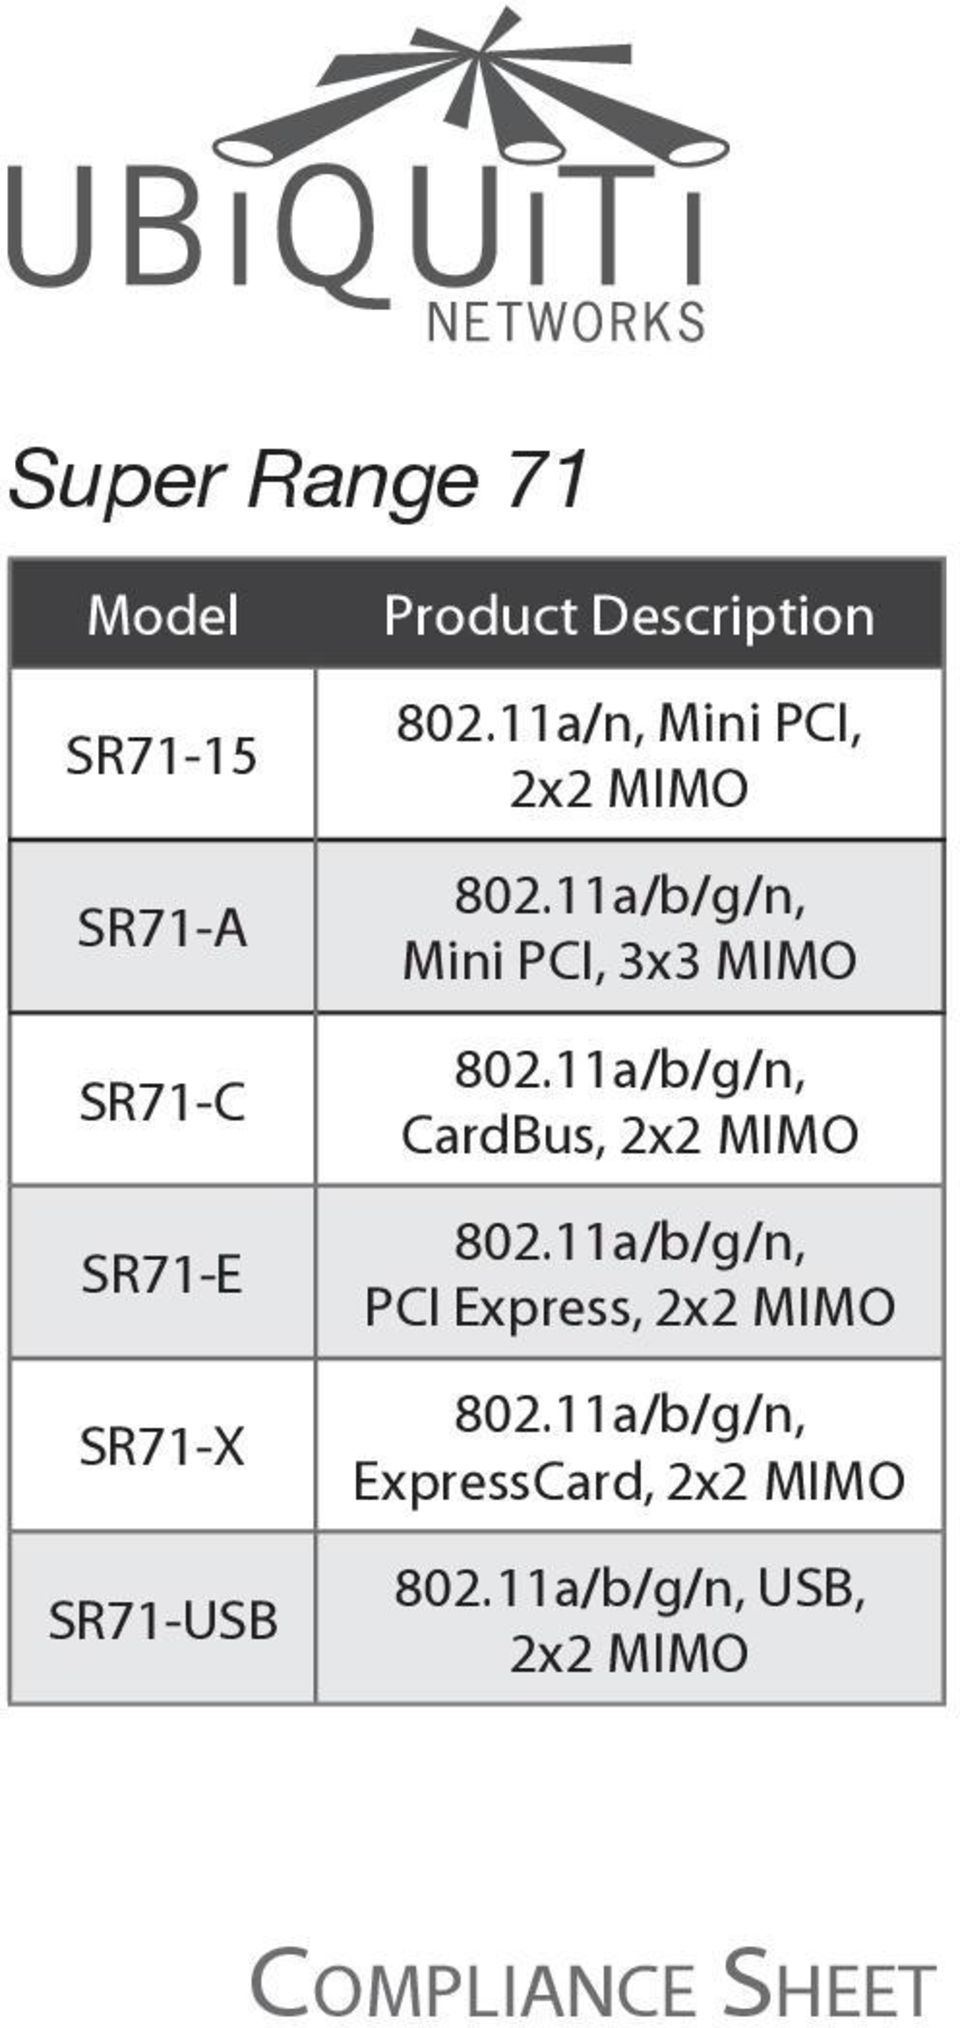 11a/b/g/n, Mini PCI, 3x3 MIMO 802.11a/b/g/n, CardBus, 2x2 MIMO 802.